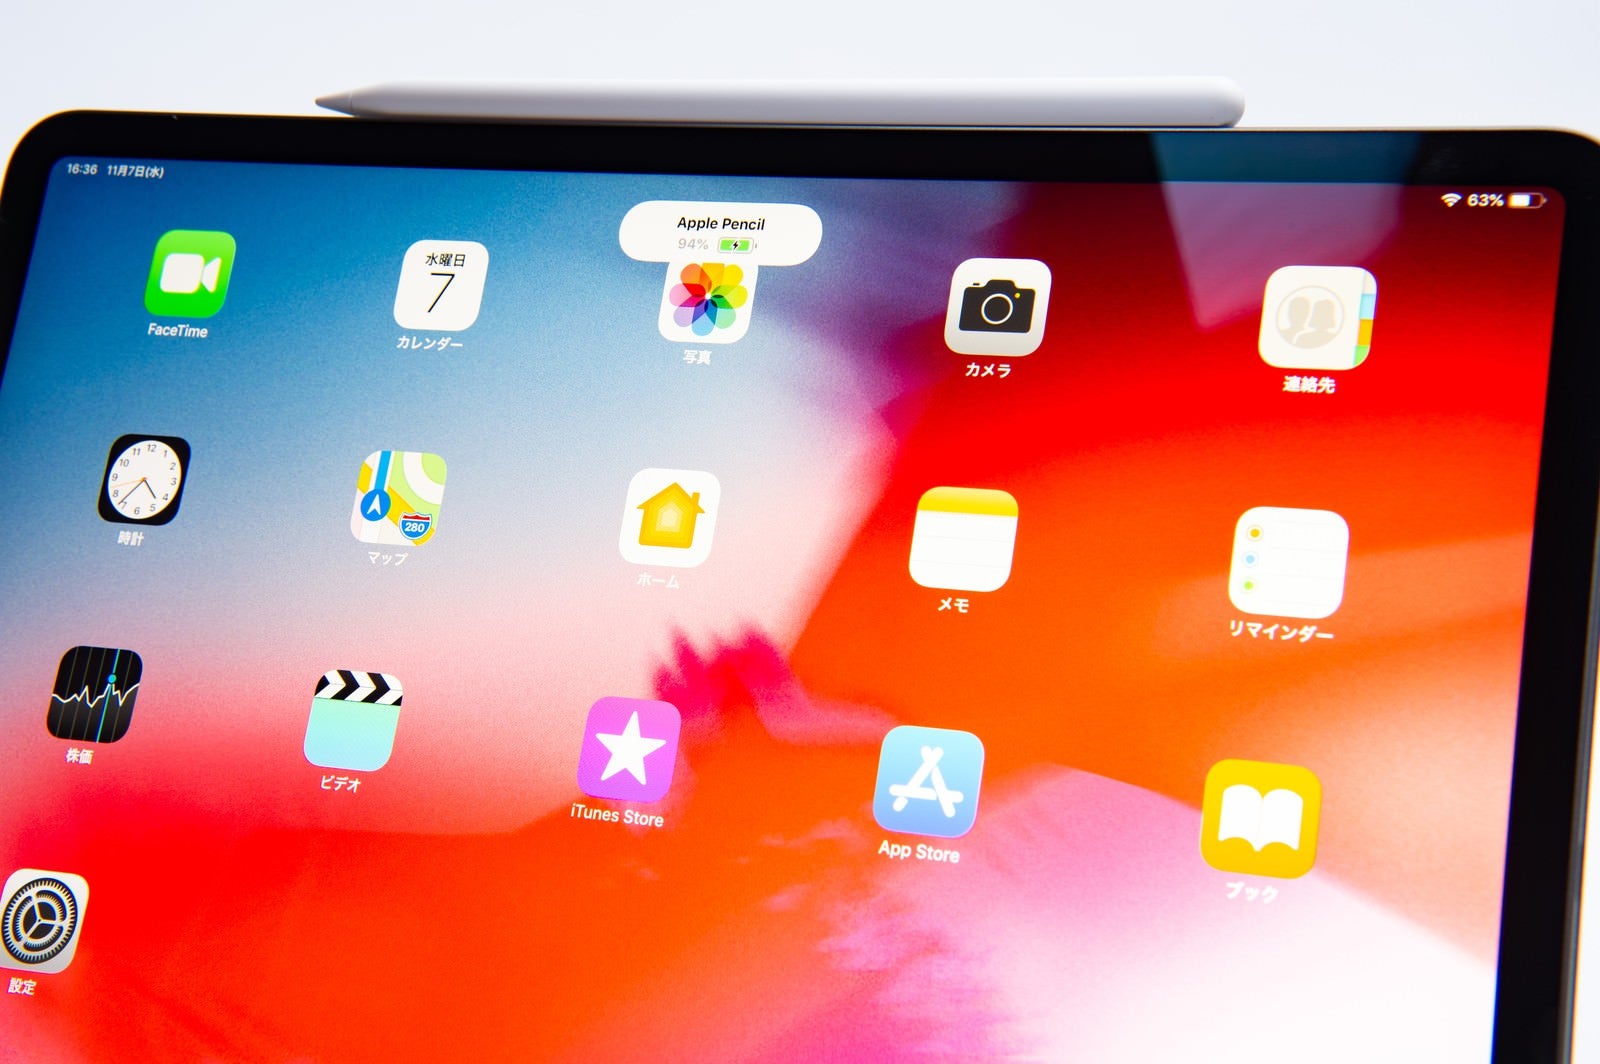 「アップルペンシルが装着されたタブレットのホーム画面（iPad Pro 2018とApple pencil）」の写真